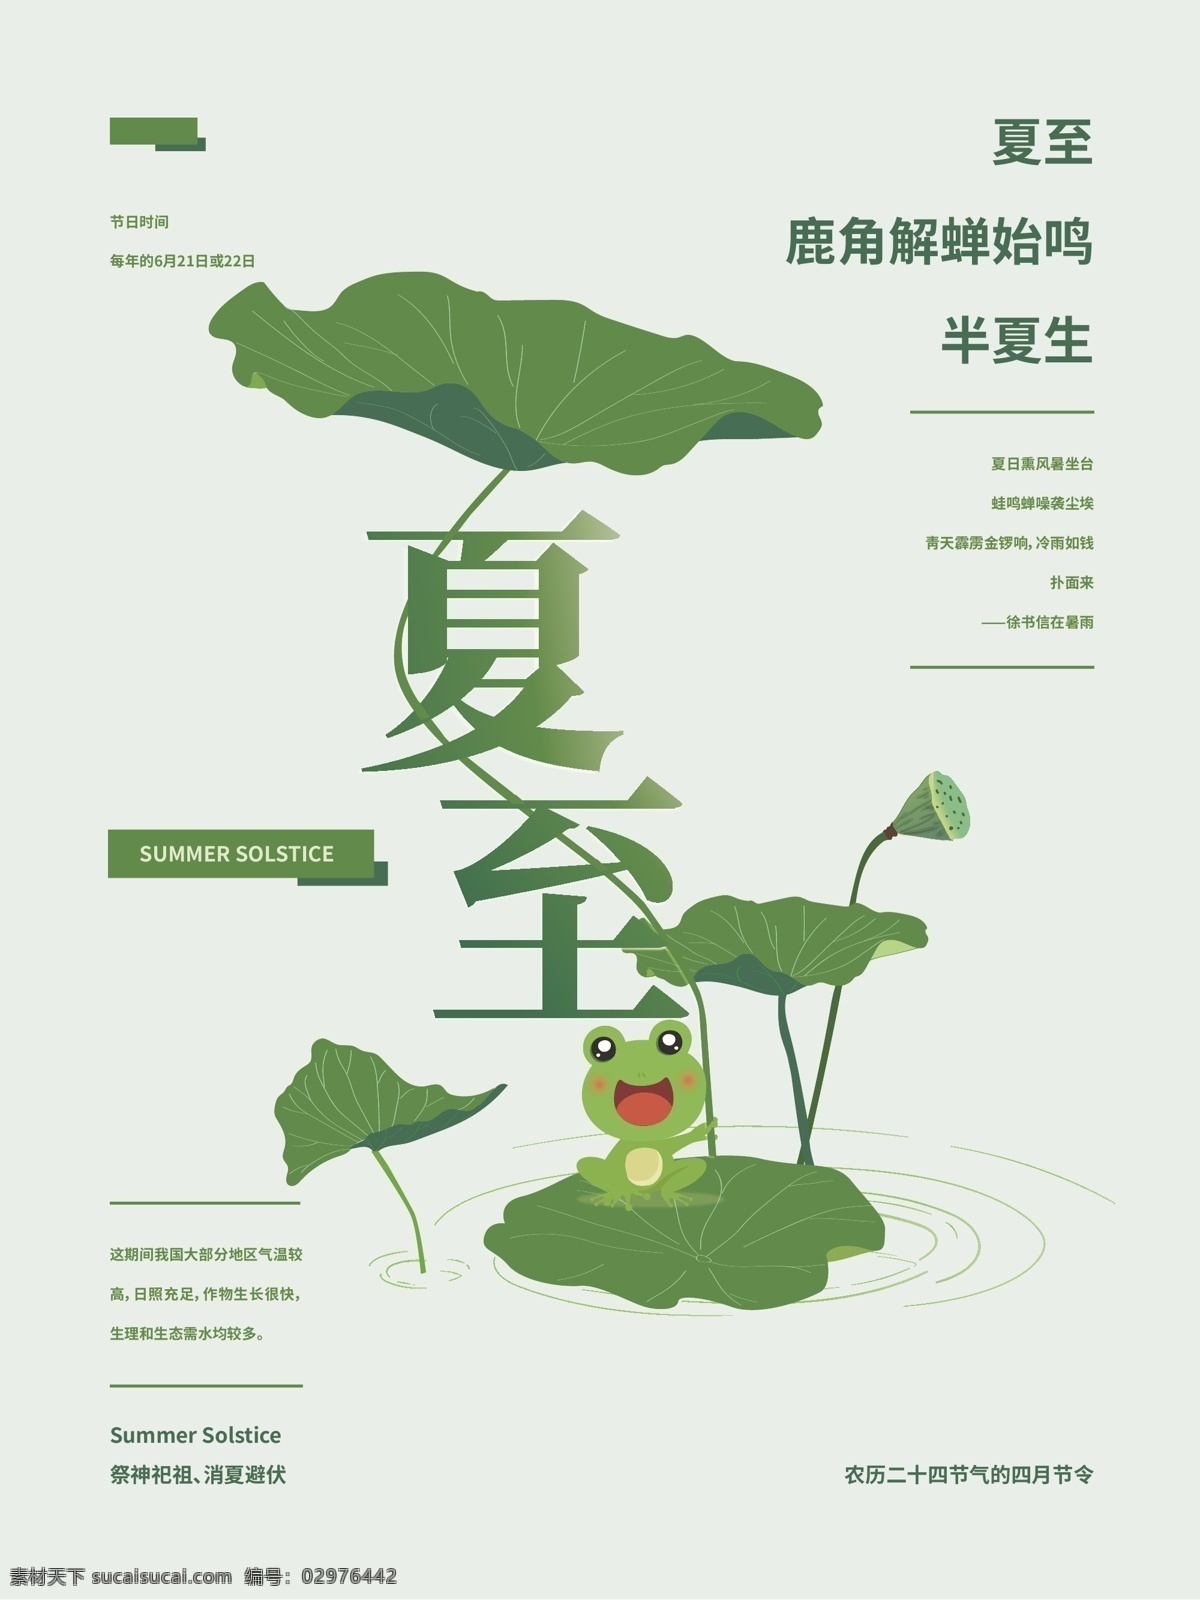 夏至 中国 节气 清新 海报 绿色 中国风